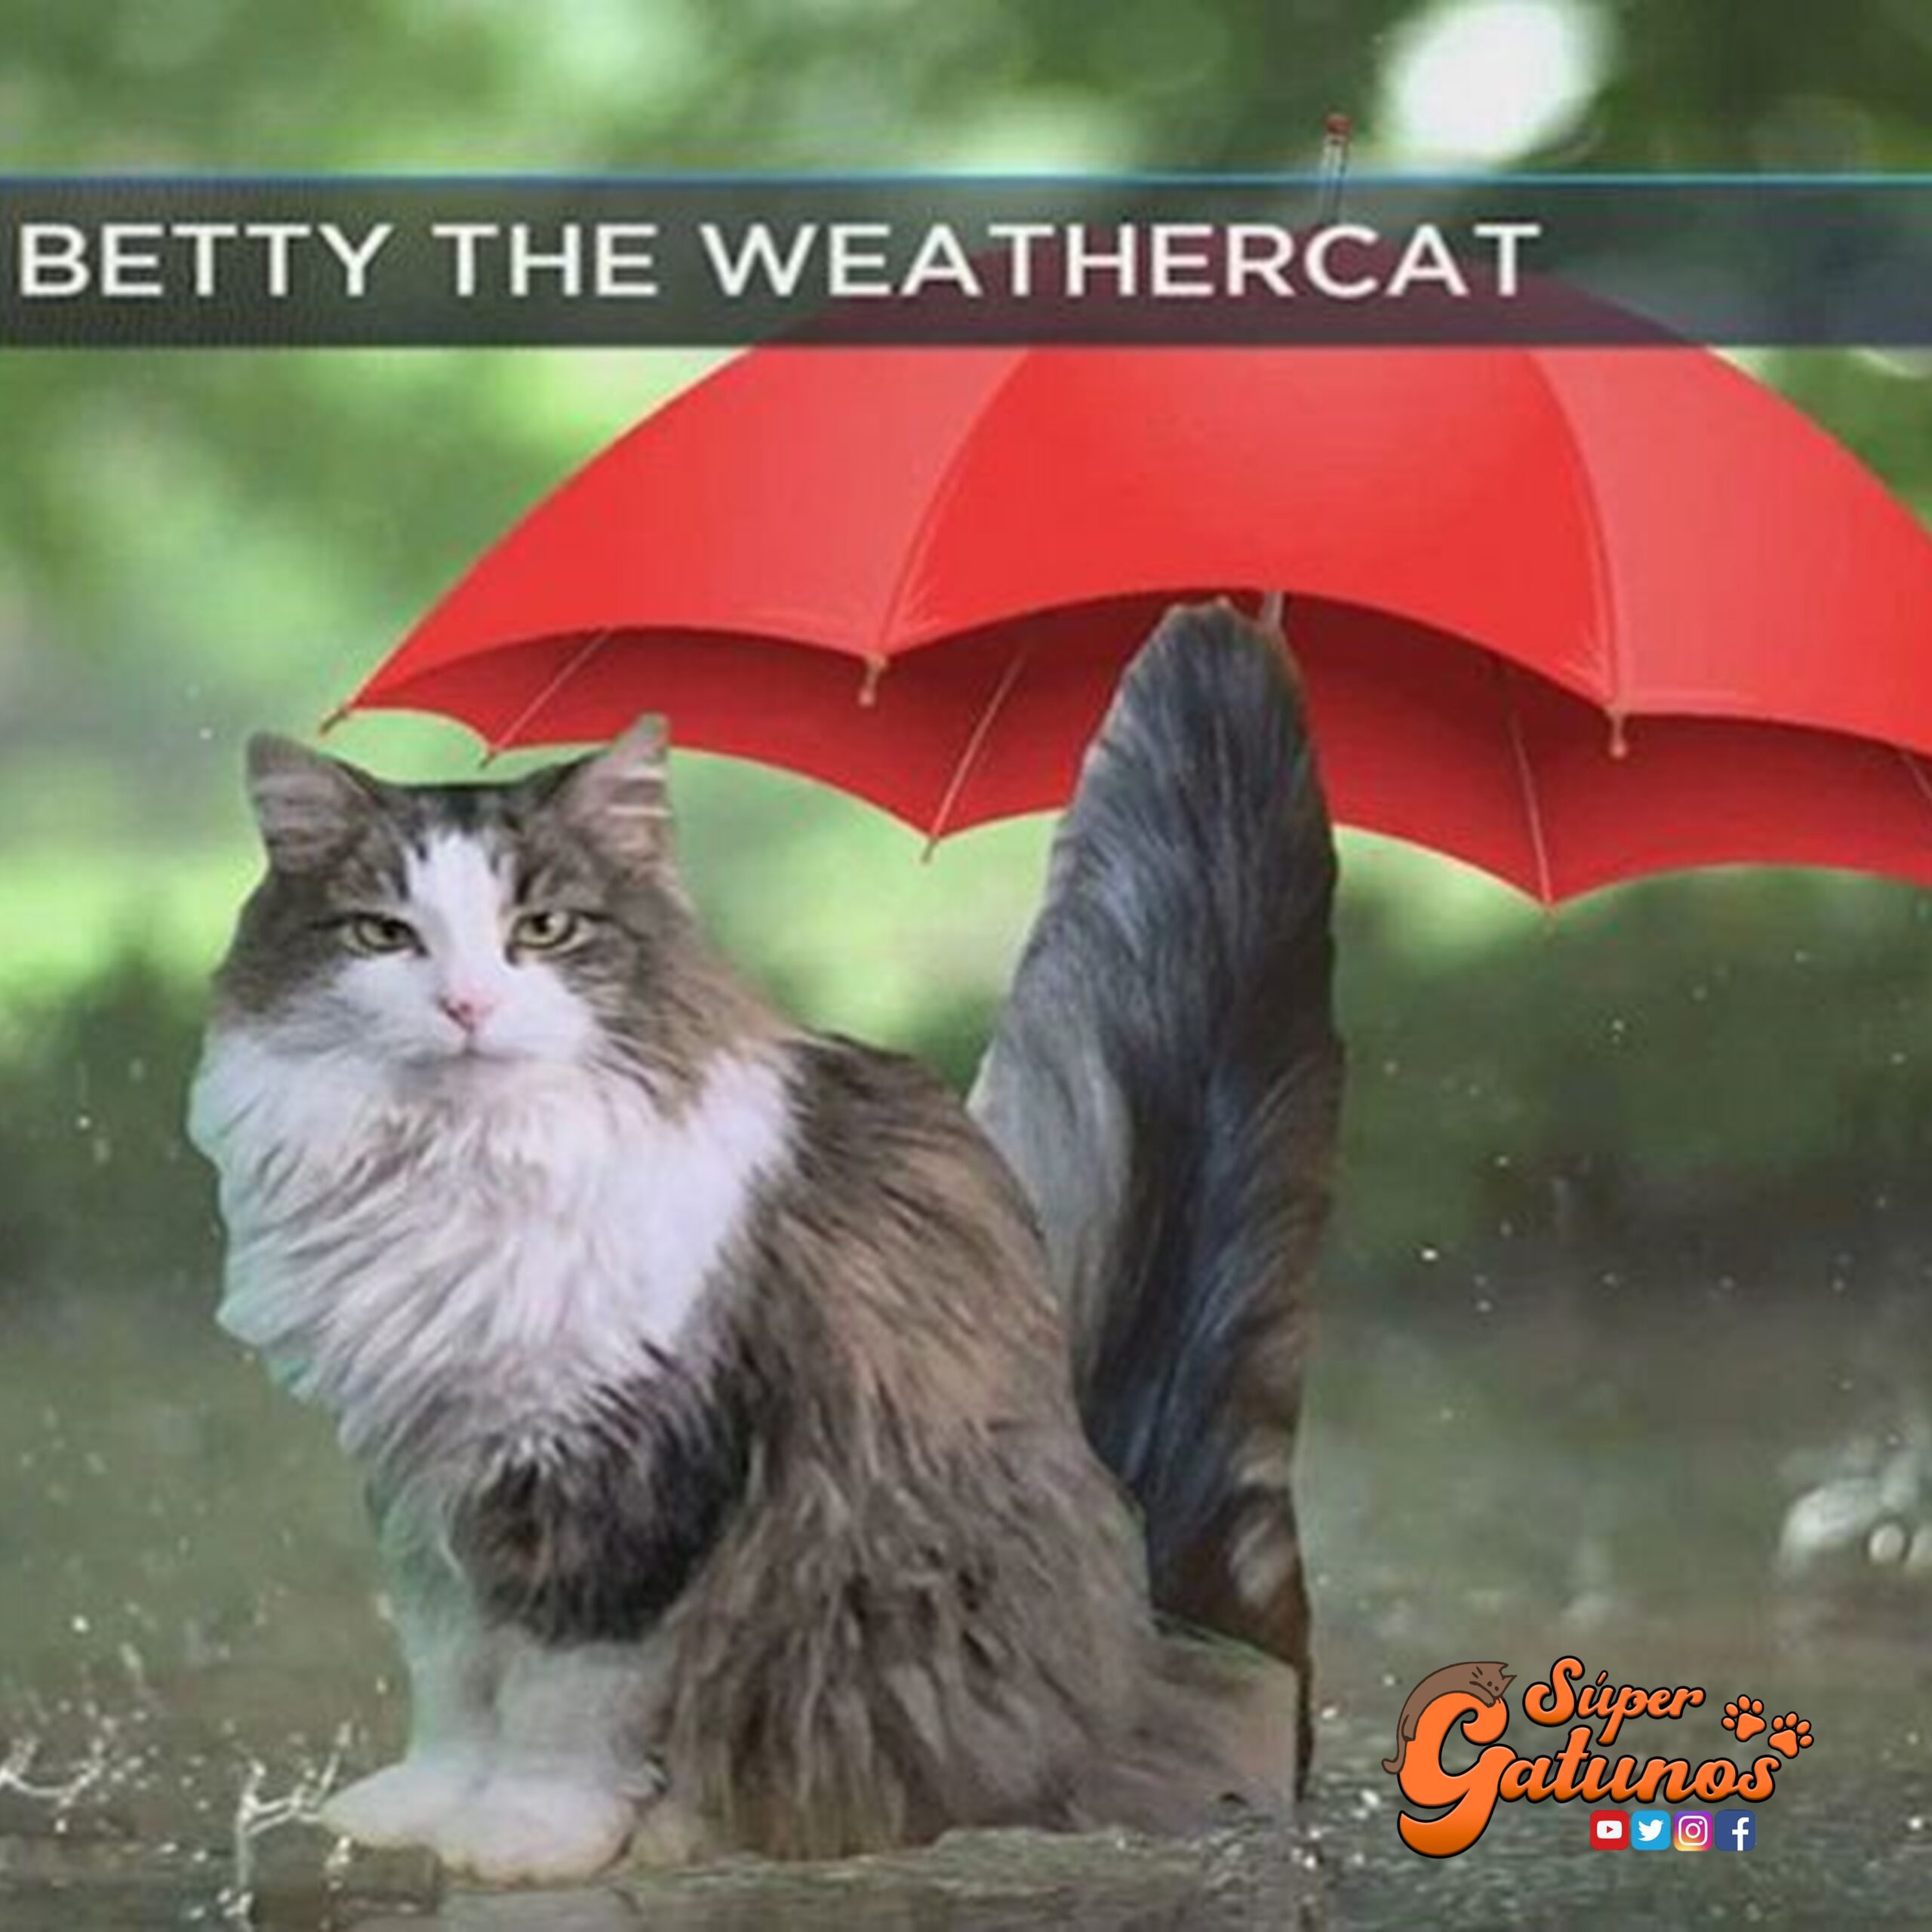 Conoce a la famosa “gata del clima” quien se trasformó en toda una celebridad en la televisión estadounidense